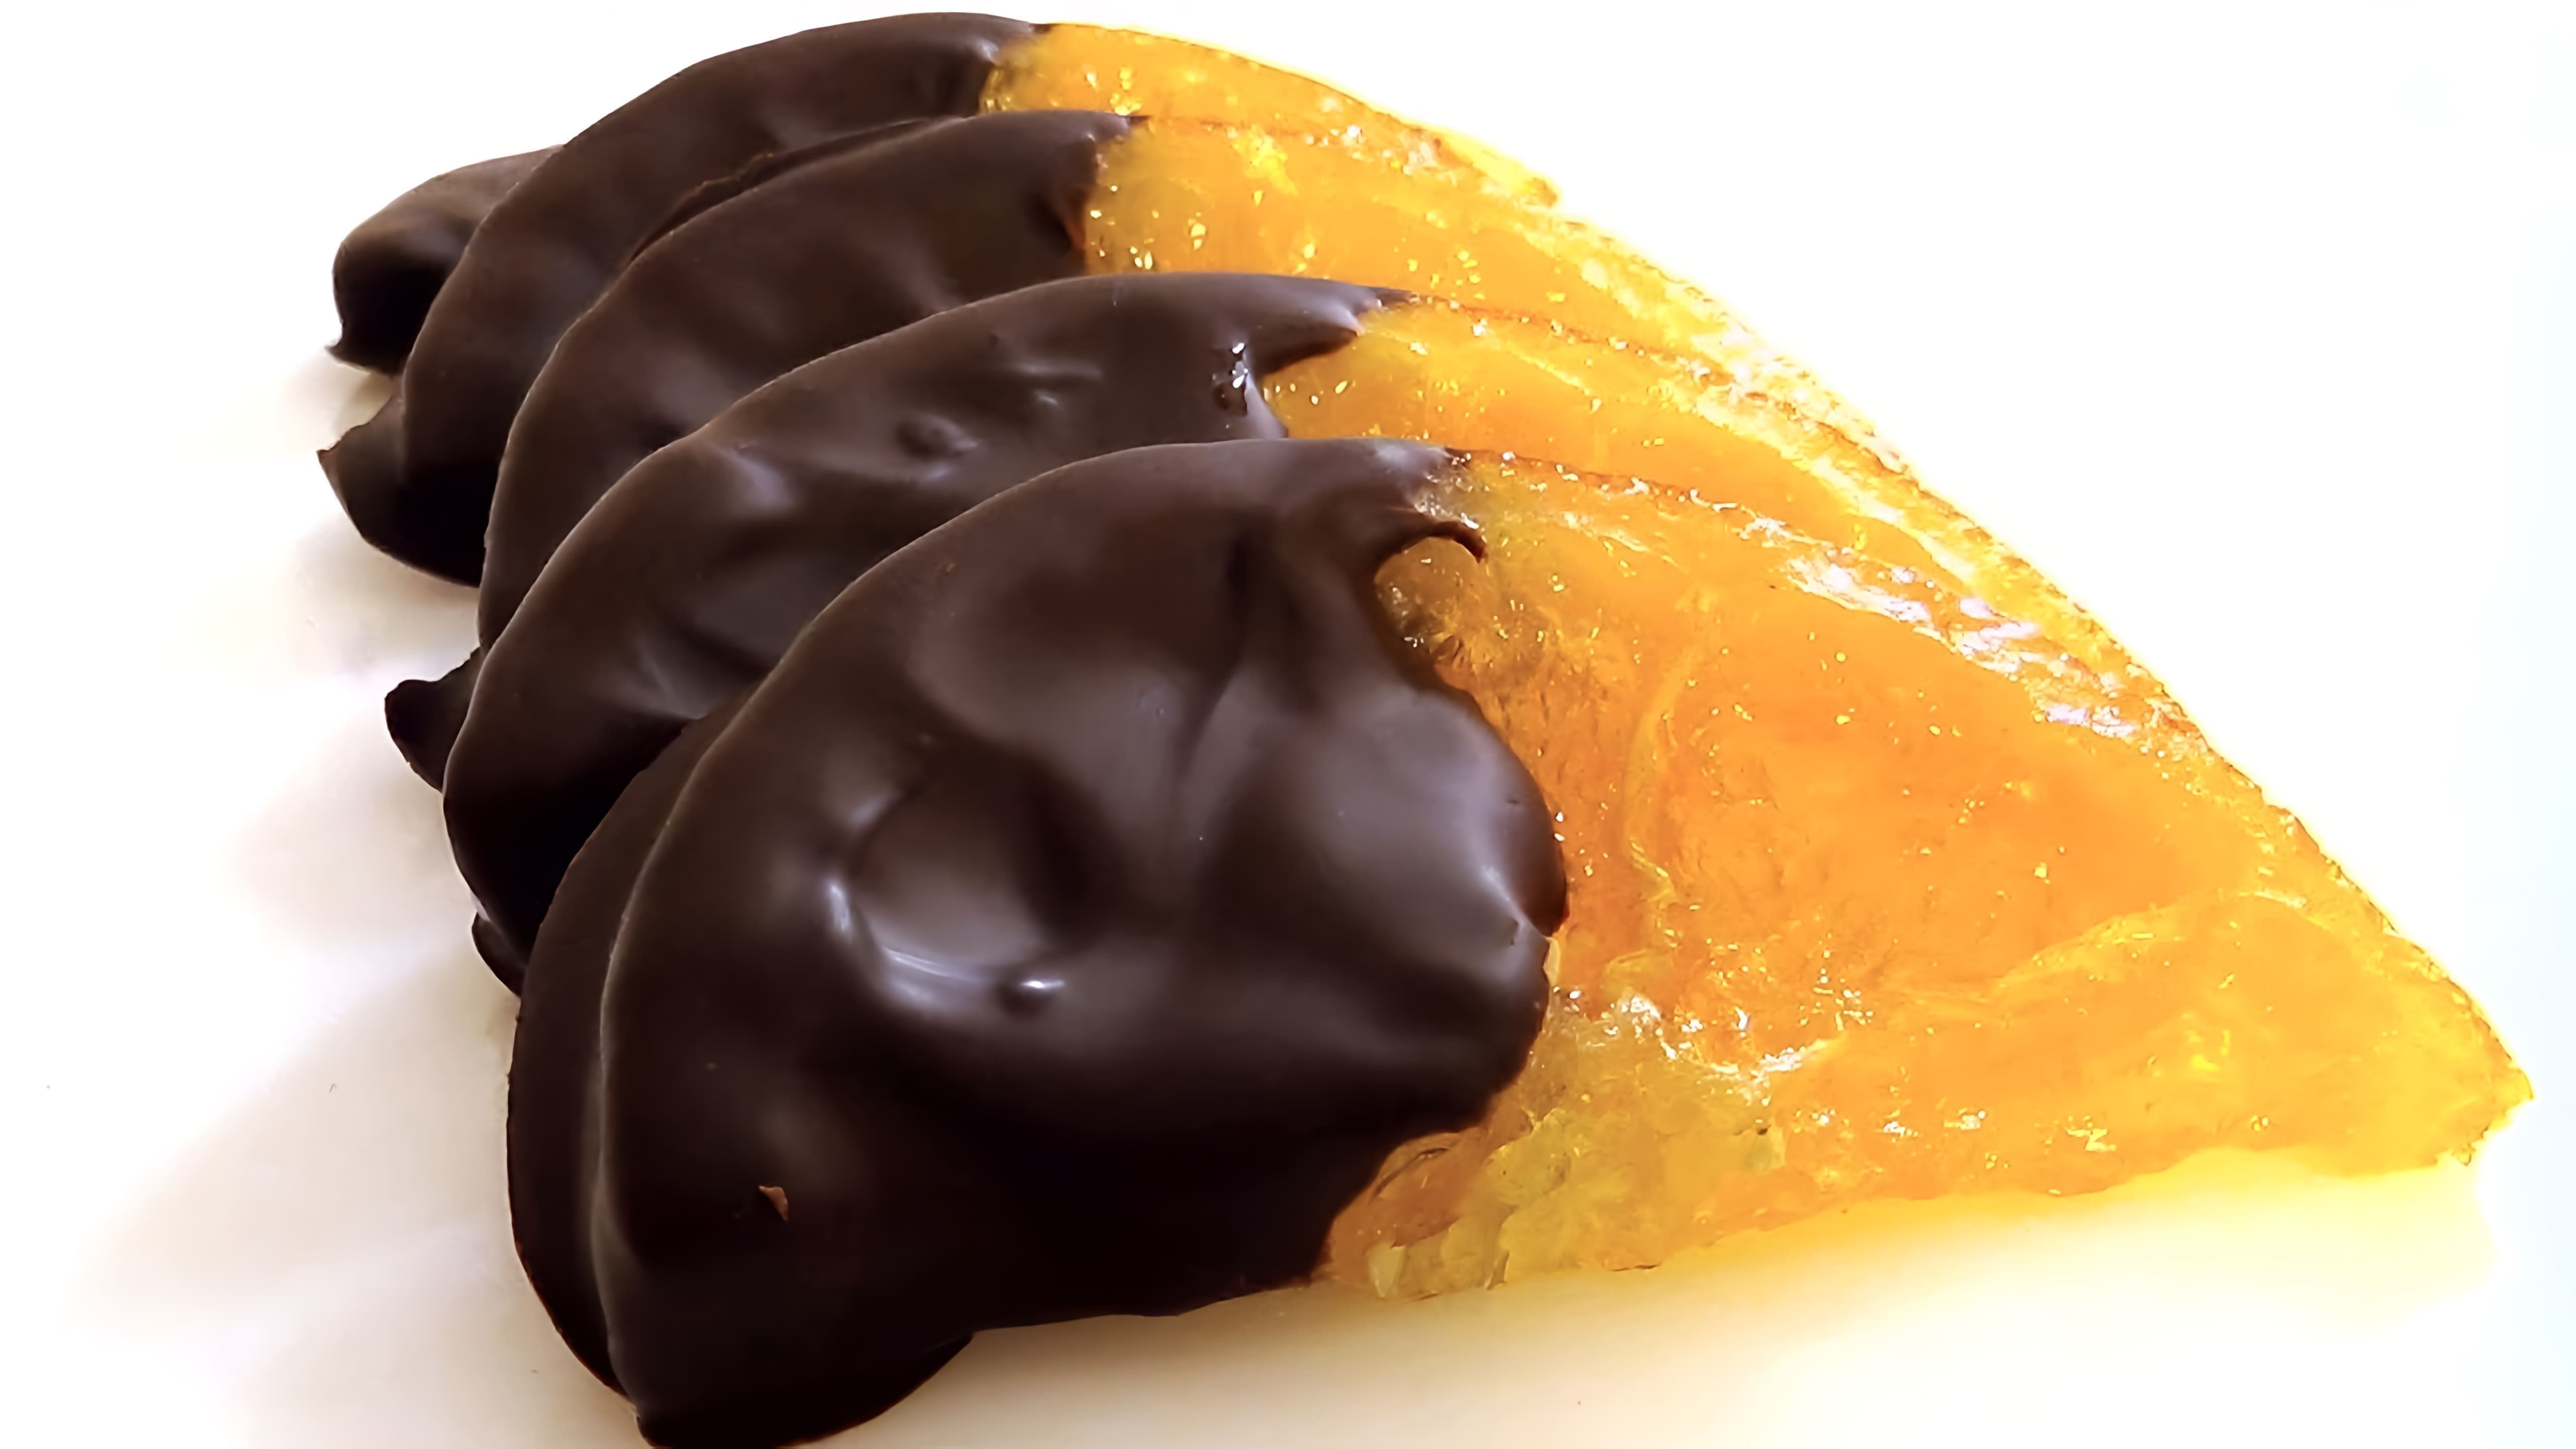 В этом видео демонстрируется процесс приготовления апельсиновых долек в шоколаде